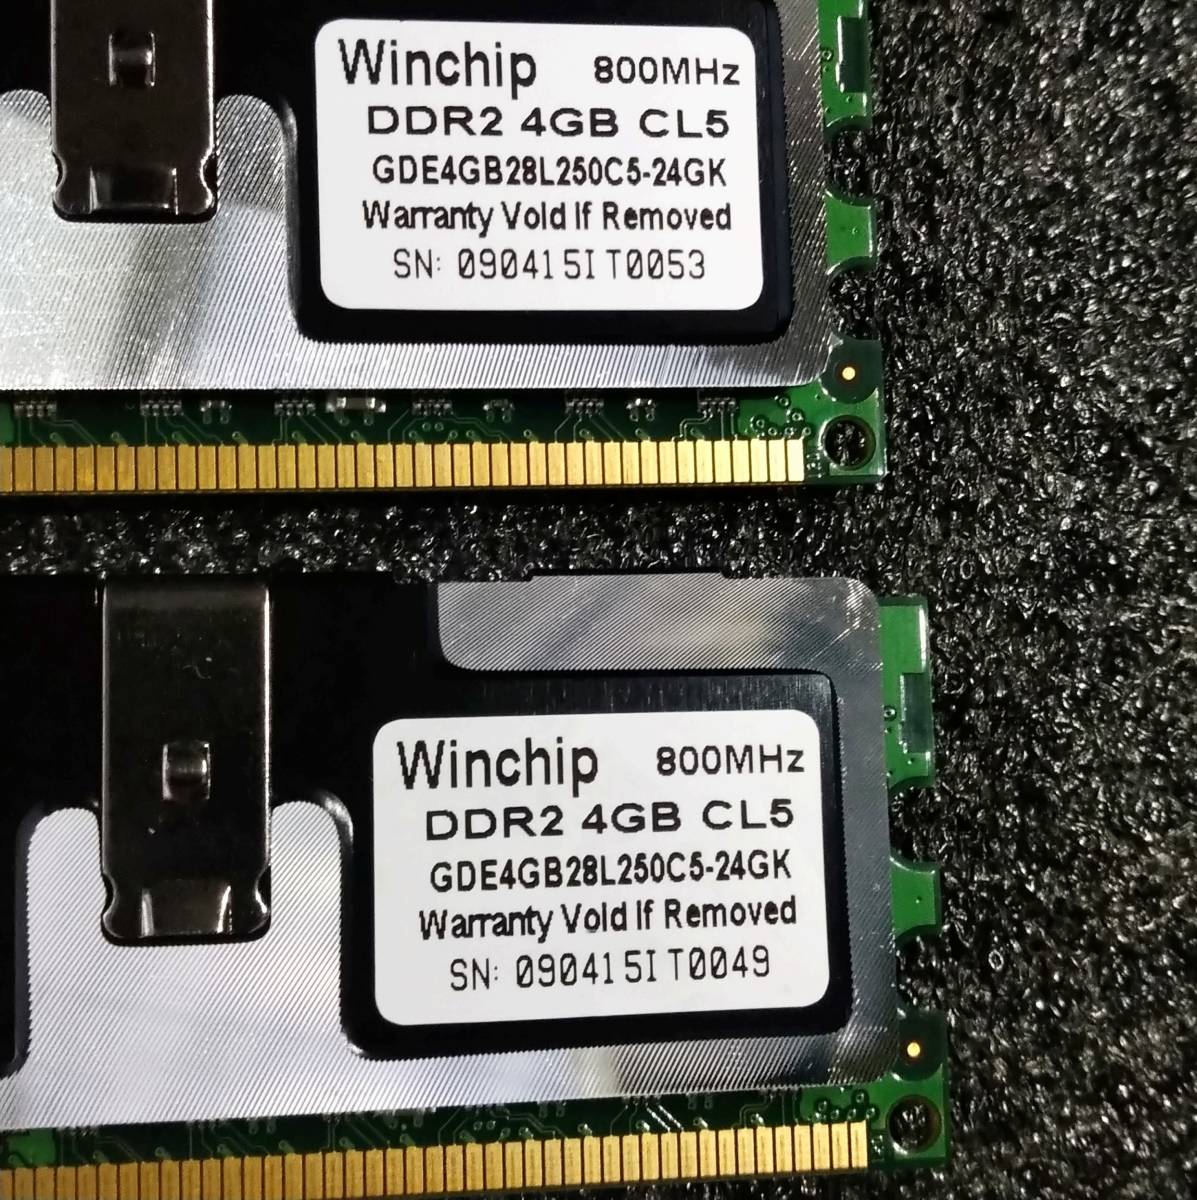 中古】DDR2メモリ16GB(4GB4枚組) Whinchip GDE4GB28L250C5-24GK [DDR2